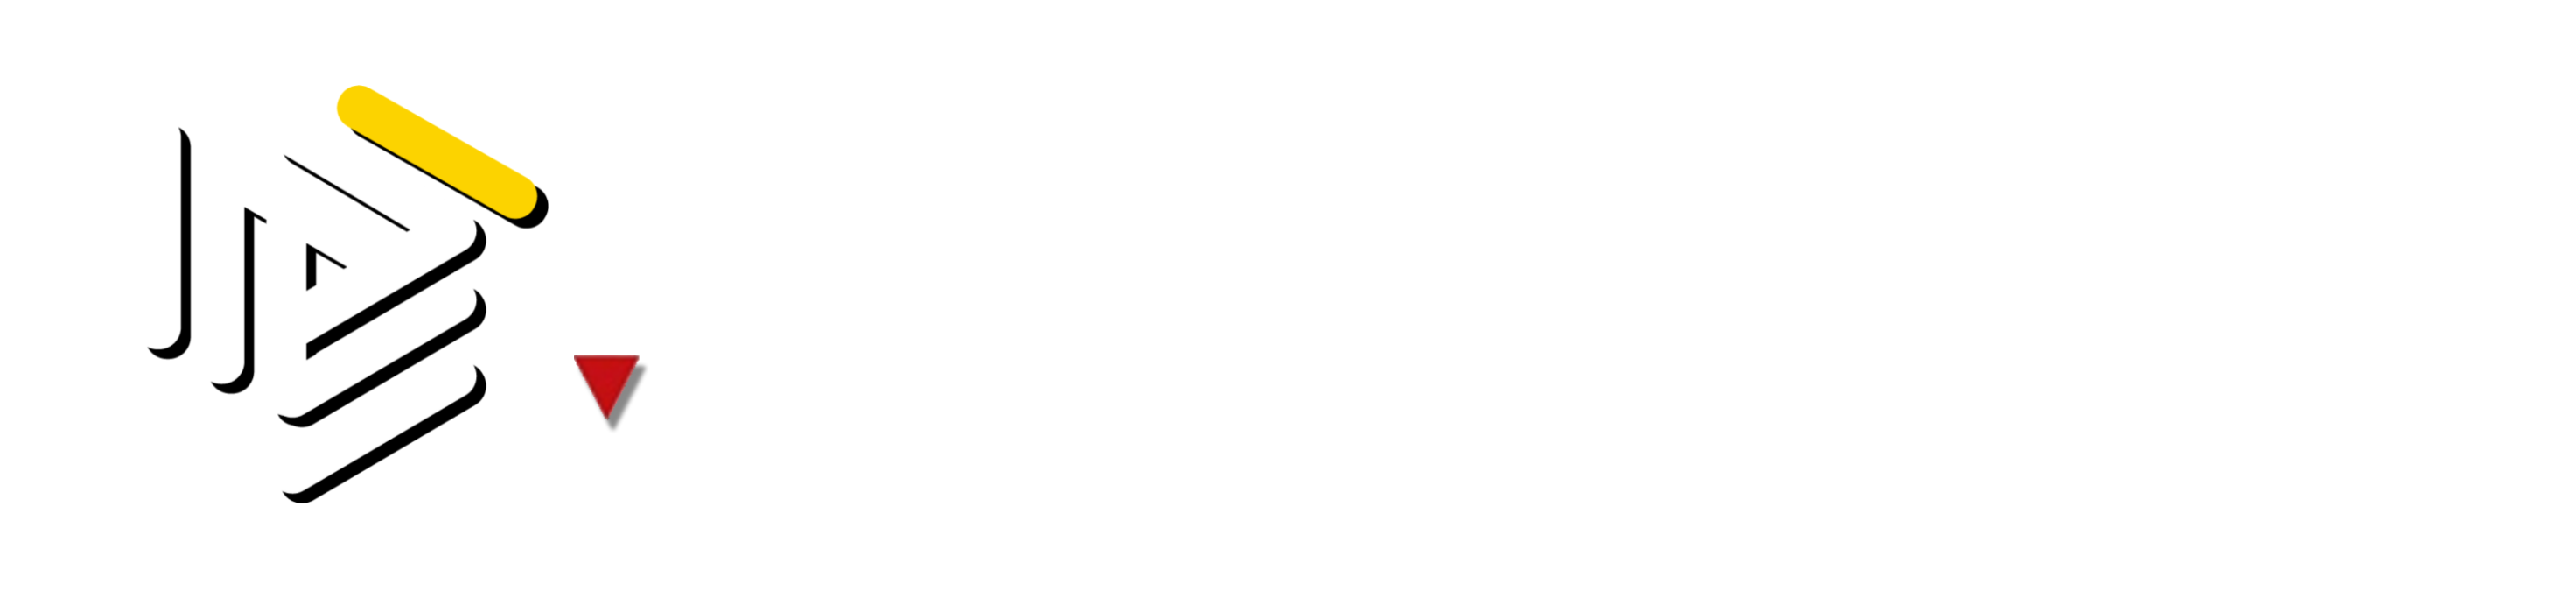 Consiglio Provinciale di Latina